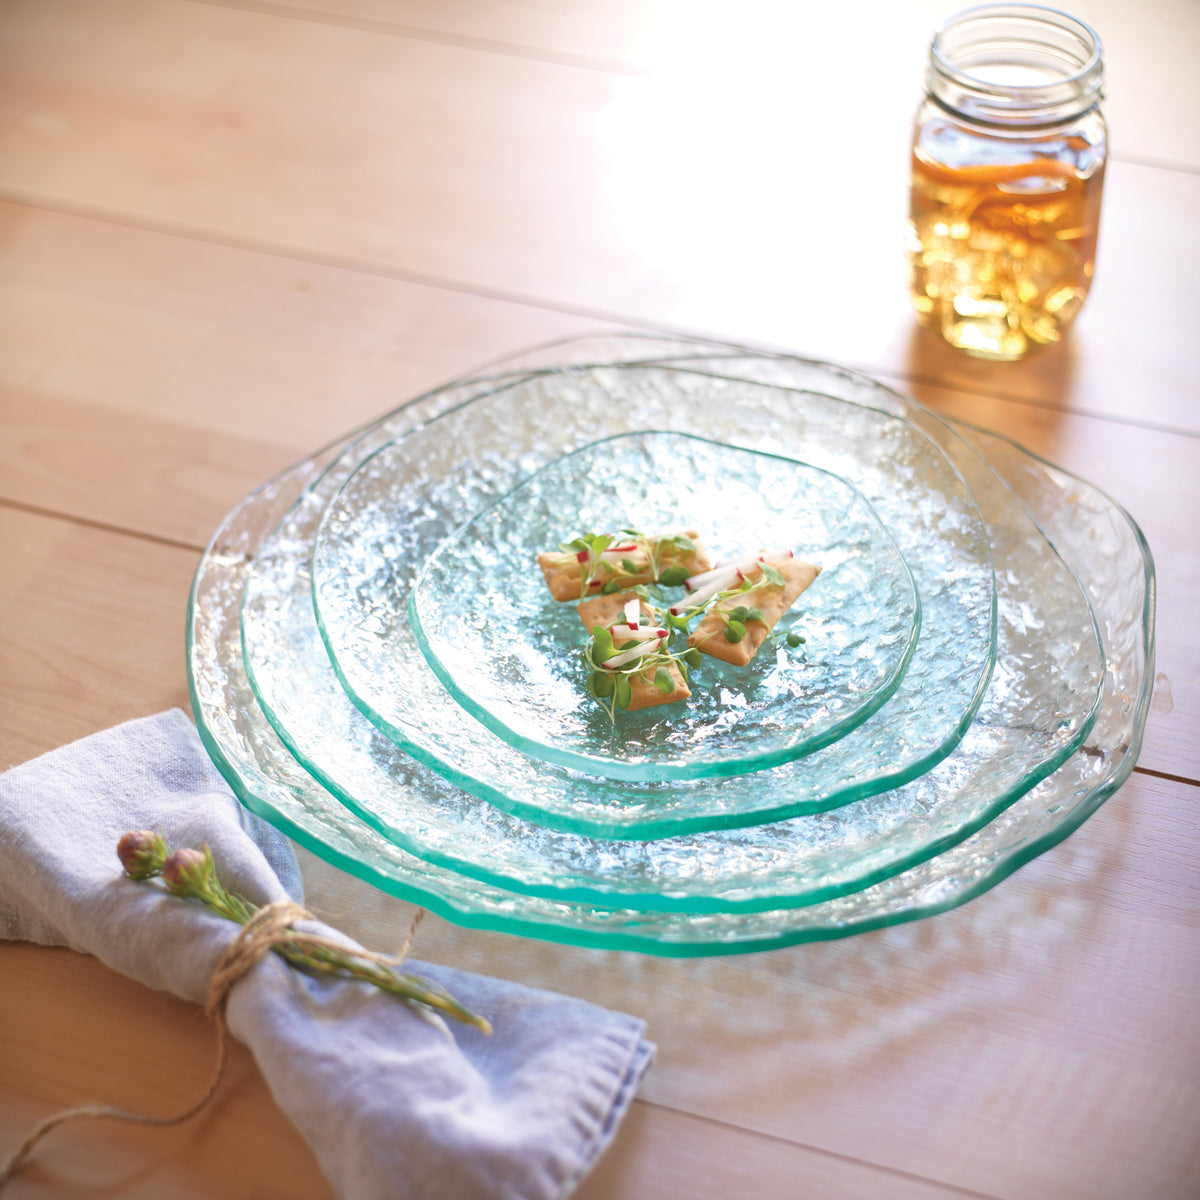 salt dinnerware, textured clear glass